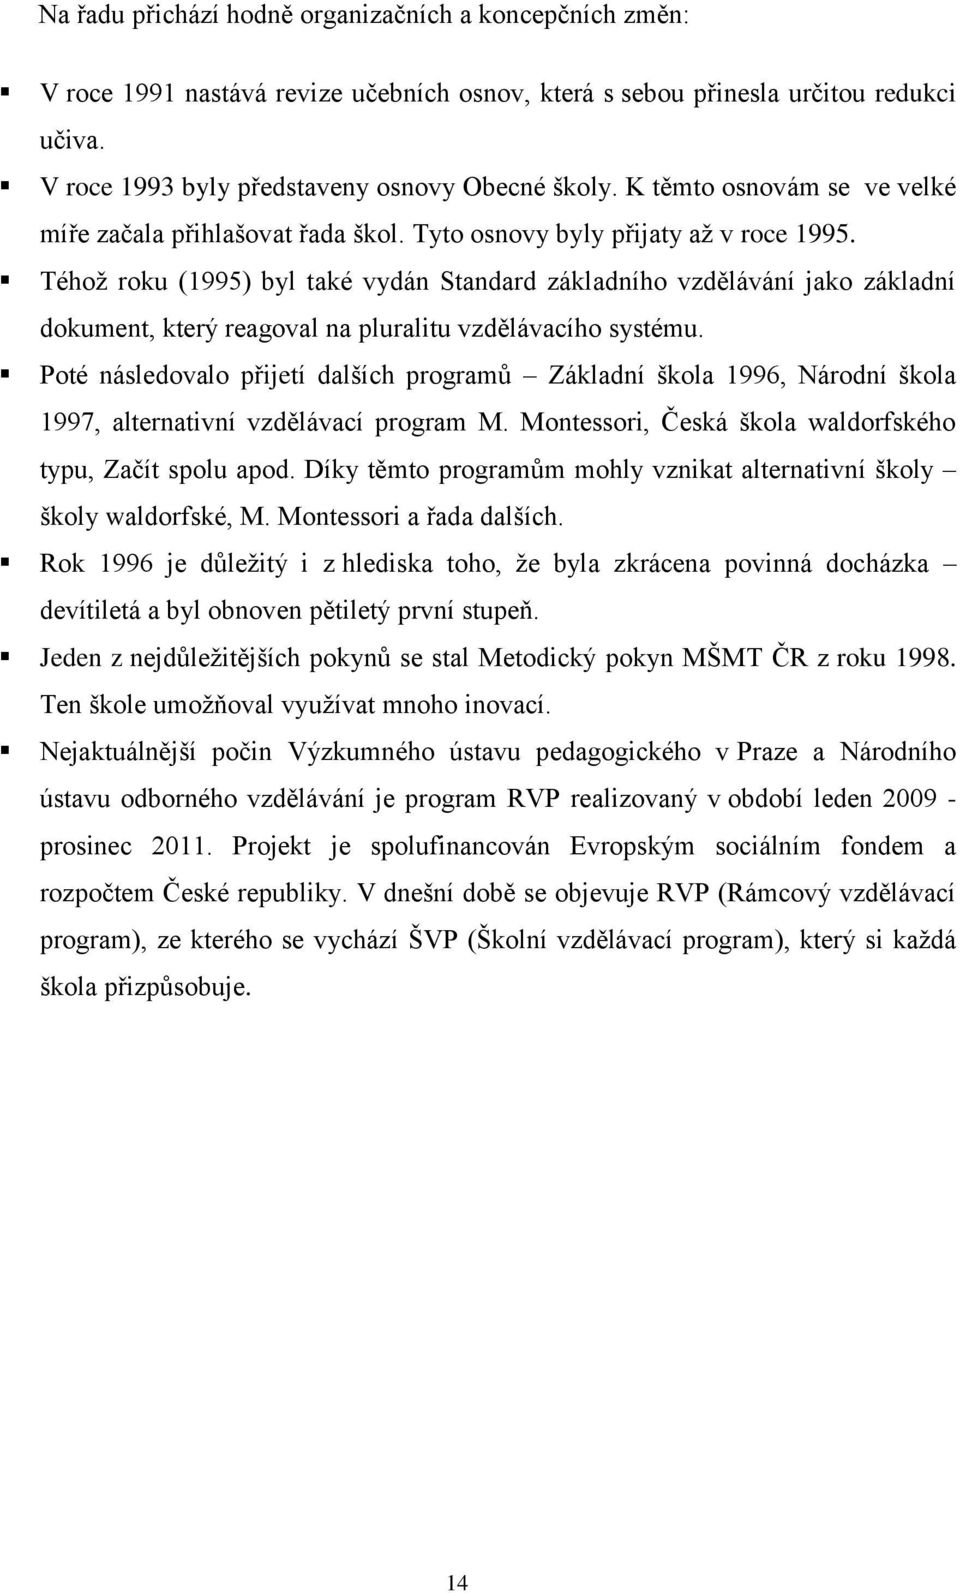 Téhoţ roku (1995) byl také vydán Standard základního vzdělávání jako základní dokument, který reagoval na pluralitu vzdělávacího systému.